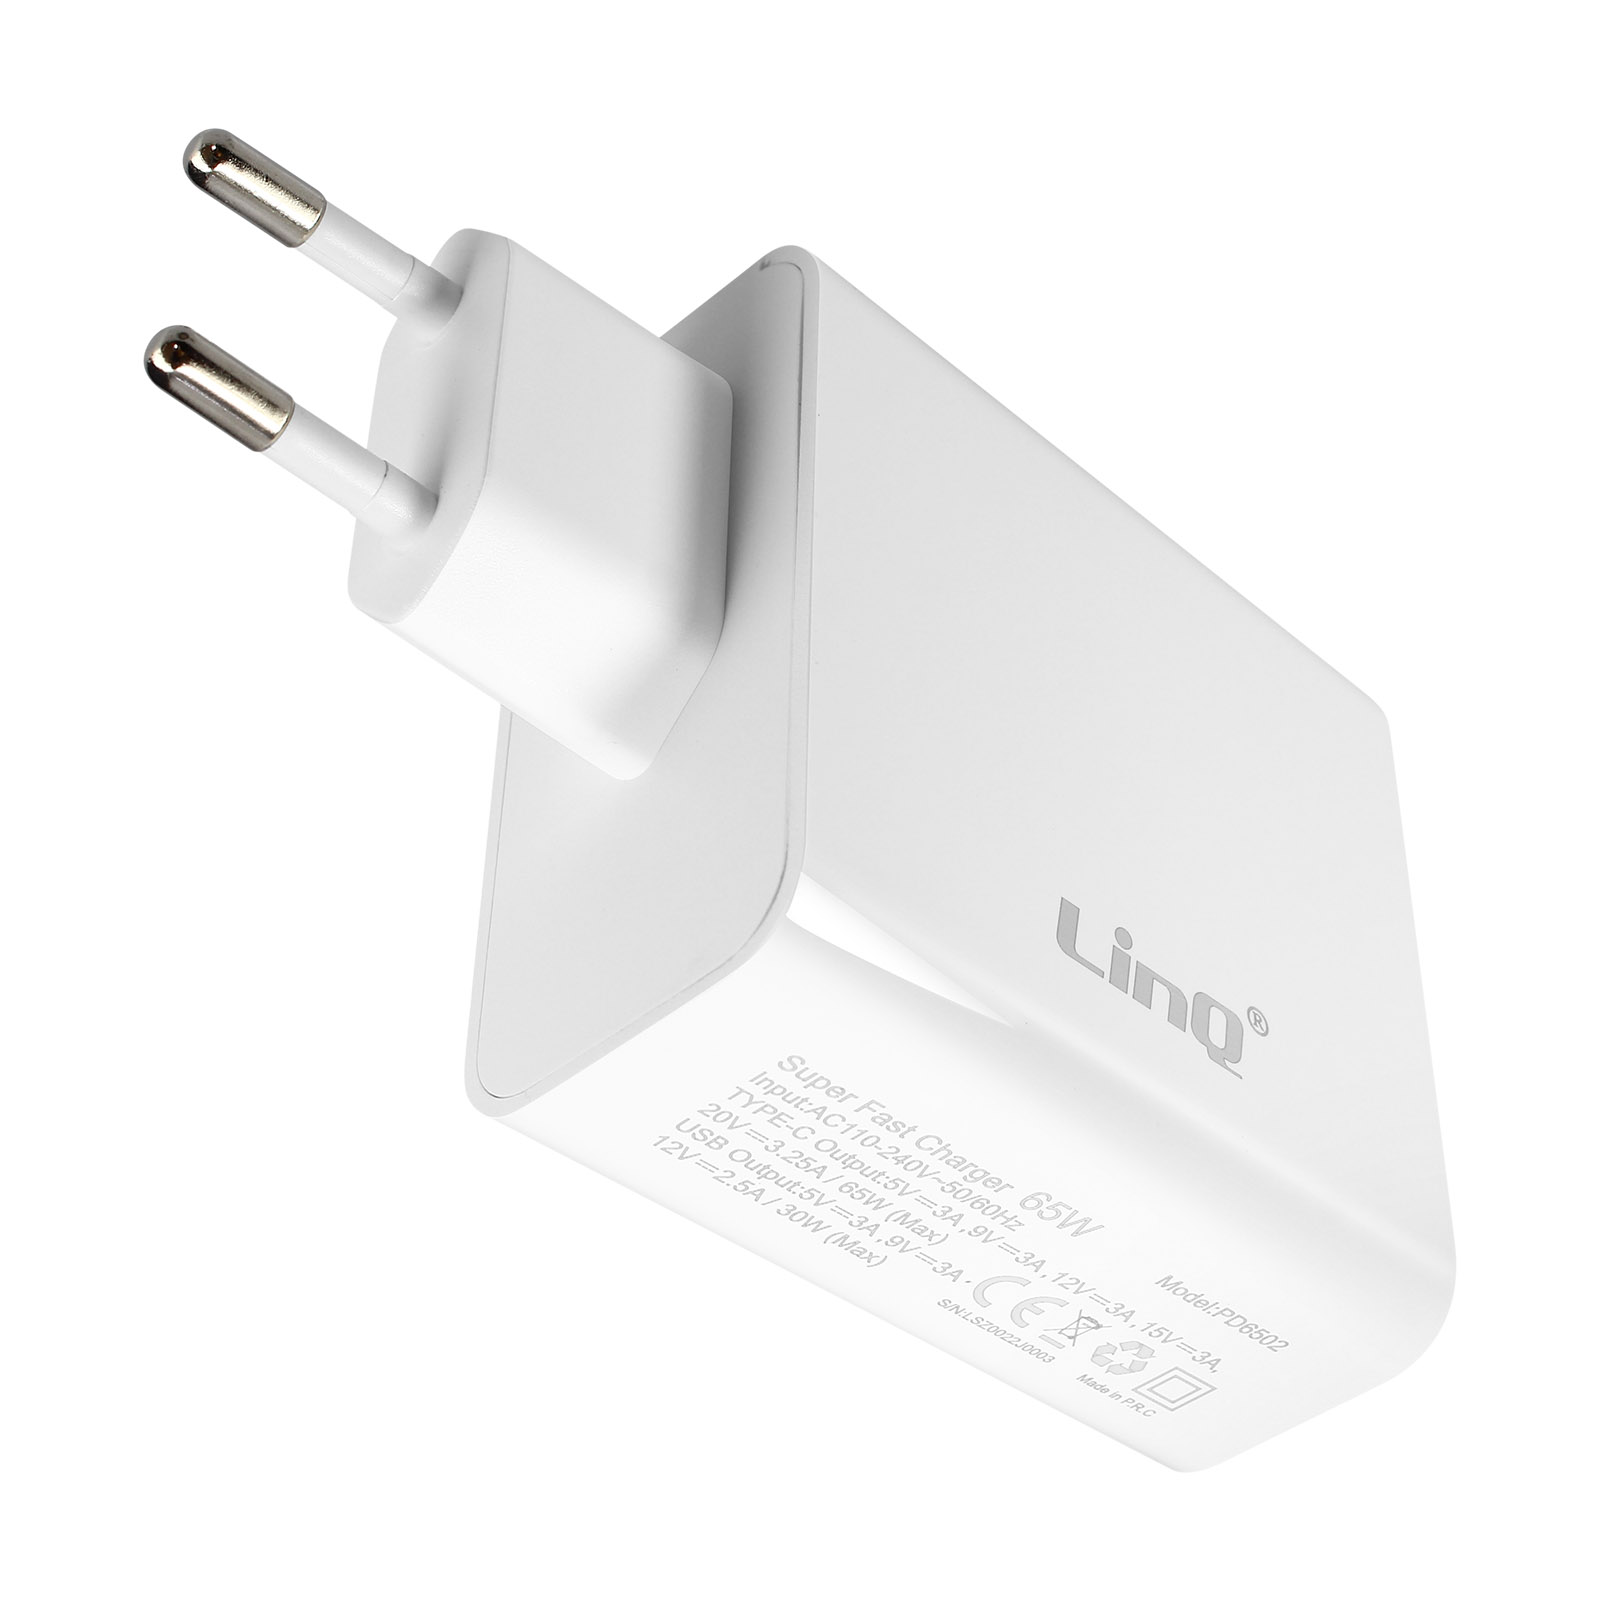 Kabel, USB-C Netzteile LINQ Weiß Universal, 1.8m 65W,